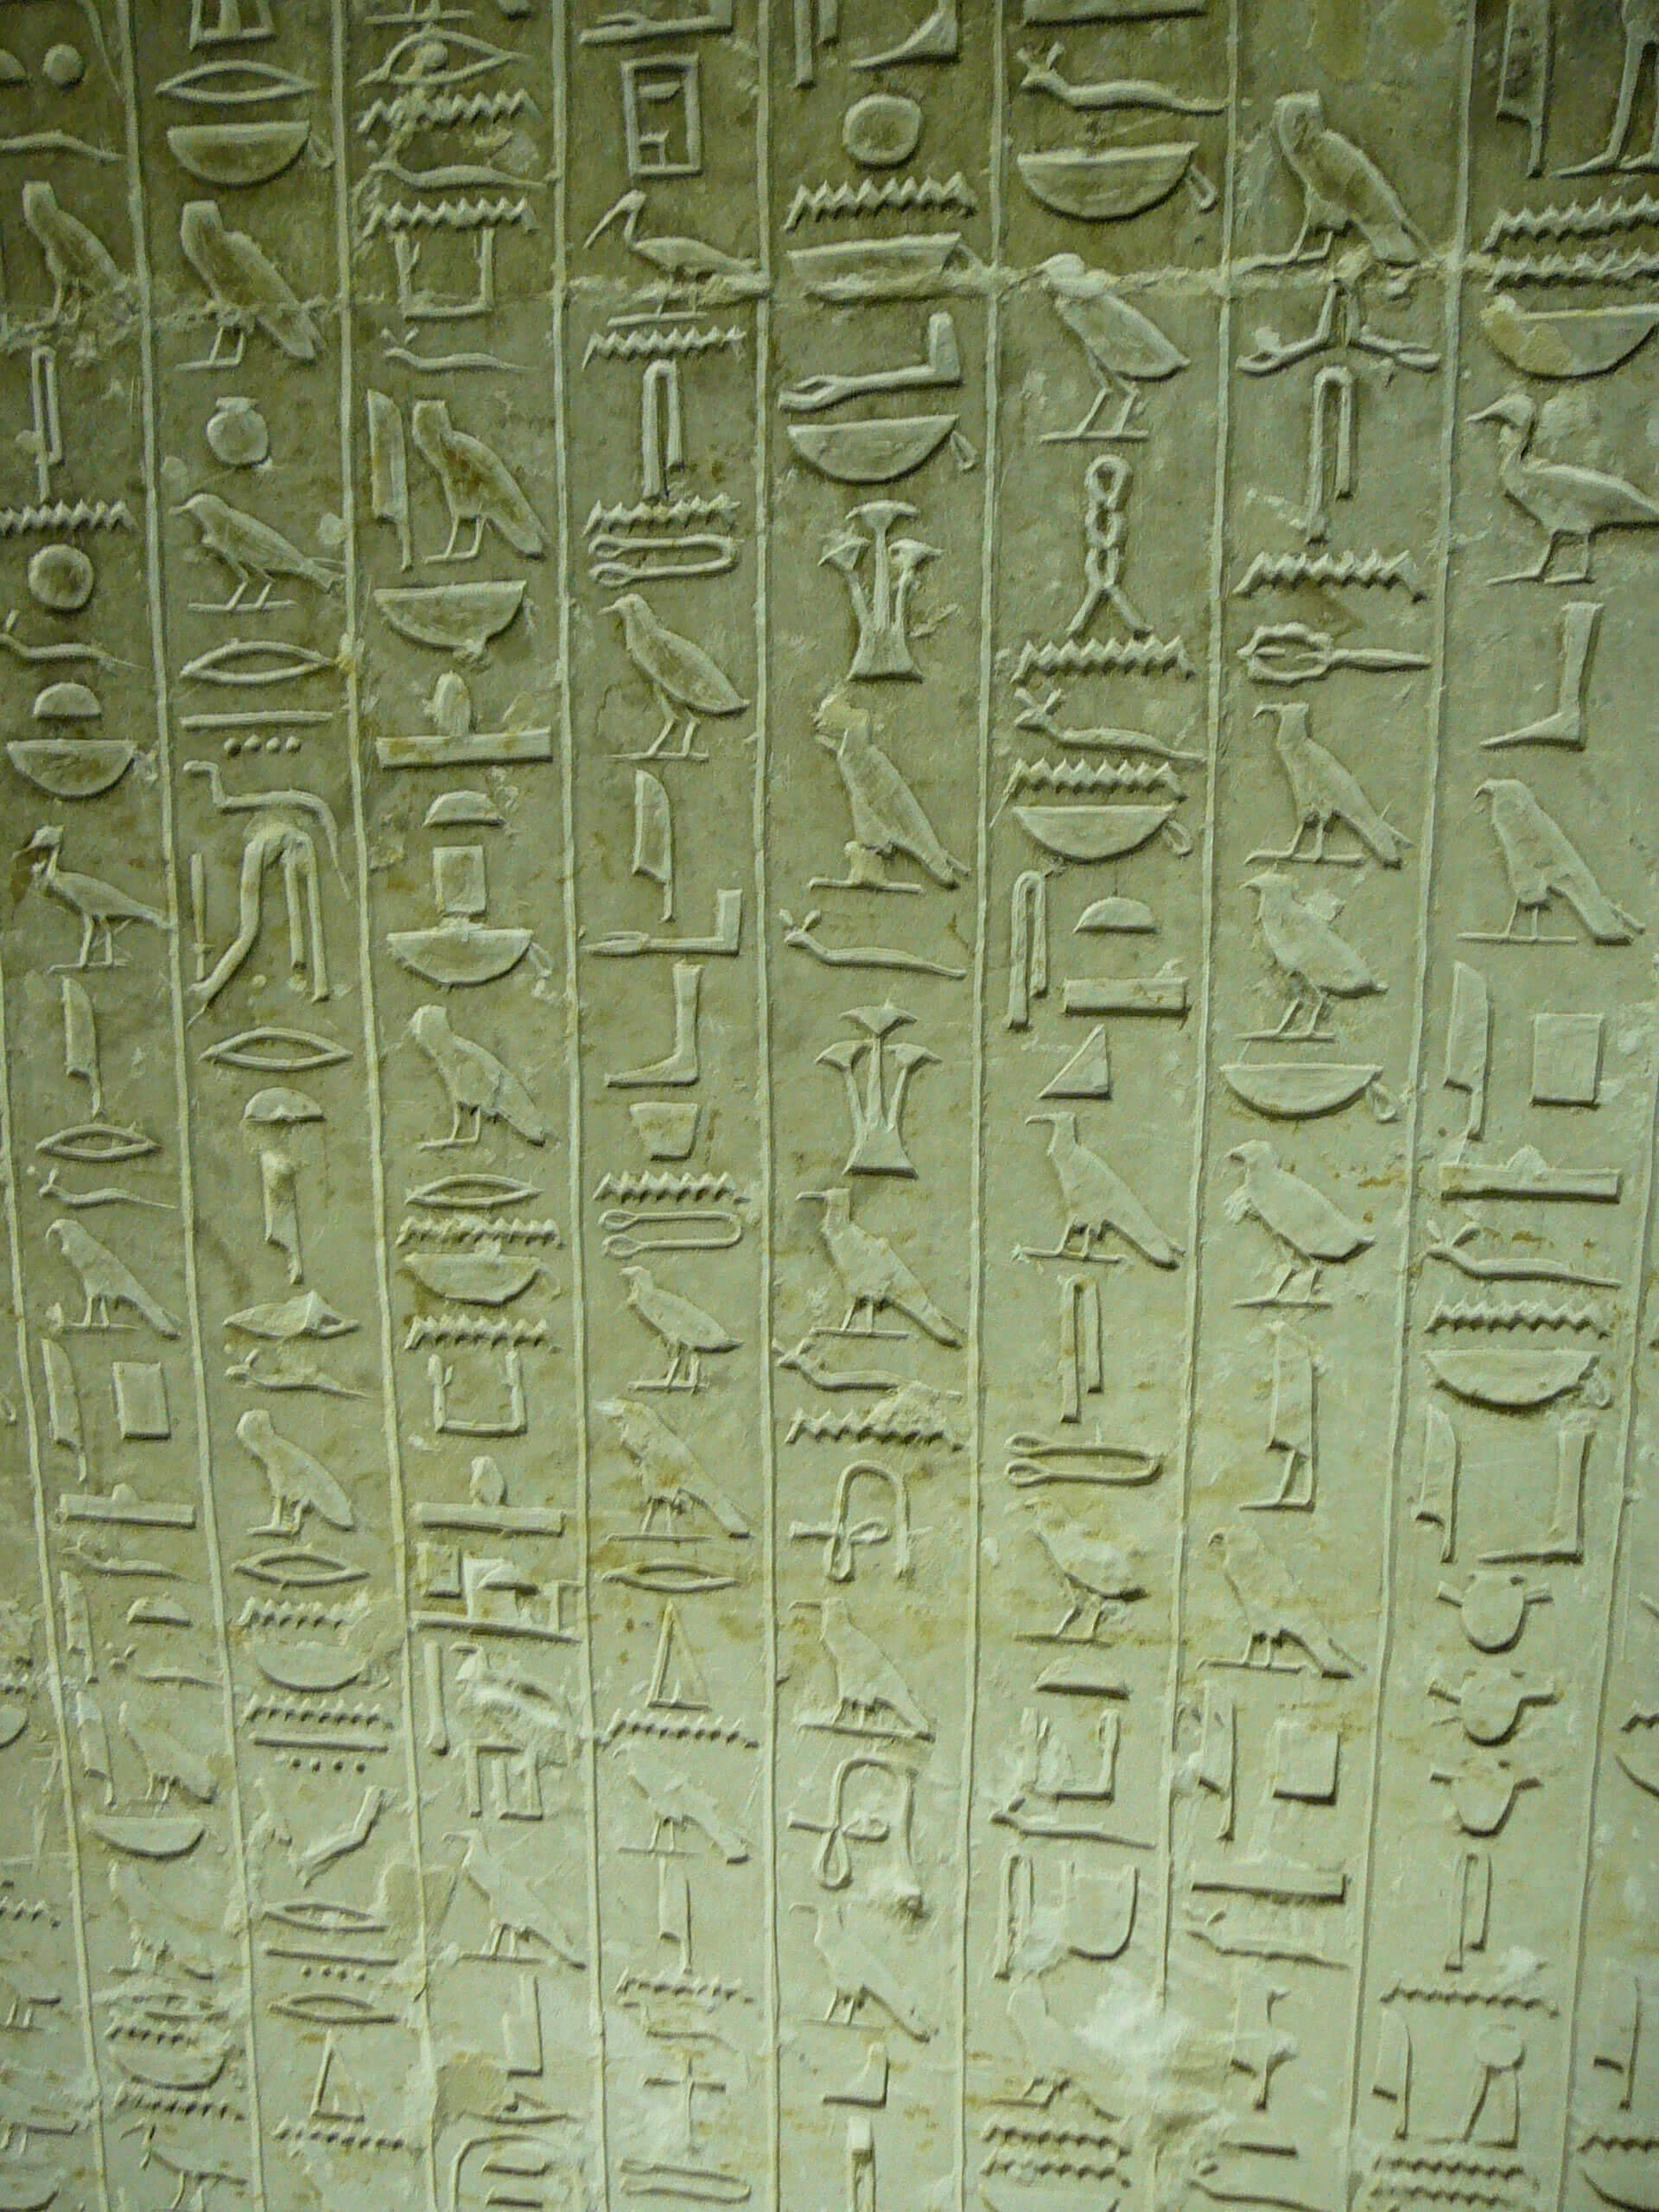 Sakkara-hierogyphs